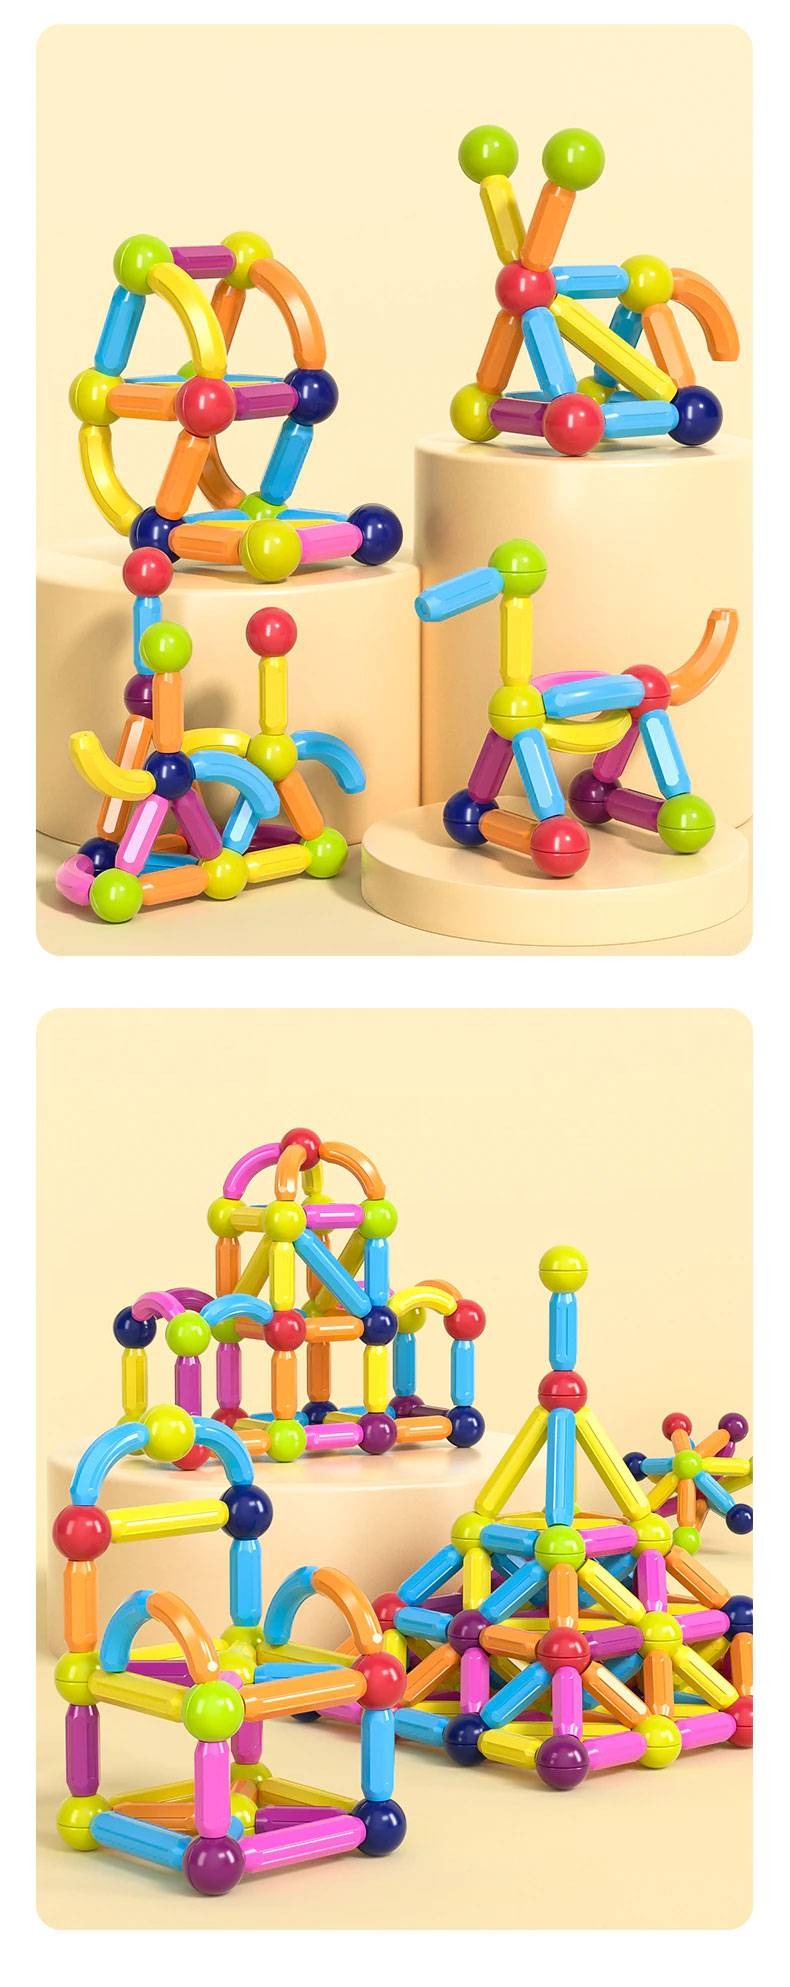 128 Peças De Blocos De Construção 3d Magnéticos Brinquedo ímã Varas Bolas  Jogo Montagem Para Crianças